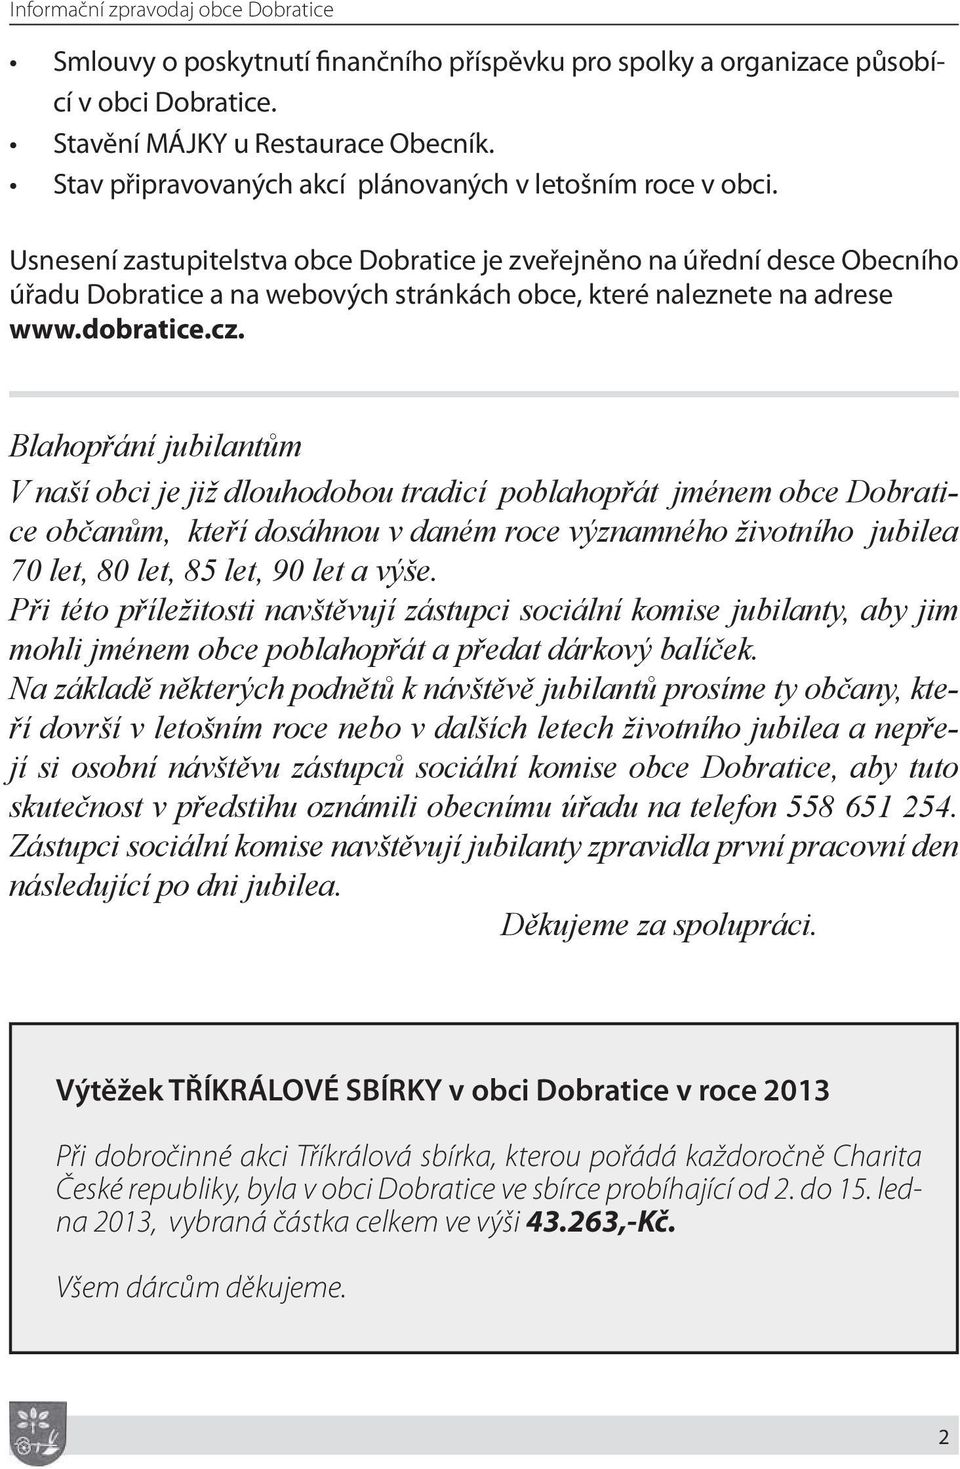 Usnesení zastupitelstva obce Dobratice je zveřejněno na úřední desce Obecního úřadu Dobratice a na webových stránkách obce, které naleznete na adrese www.dobratice.cz.